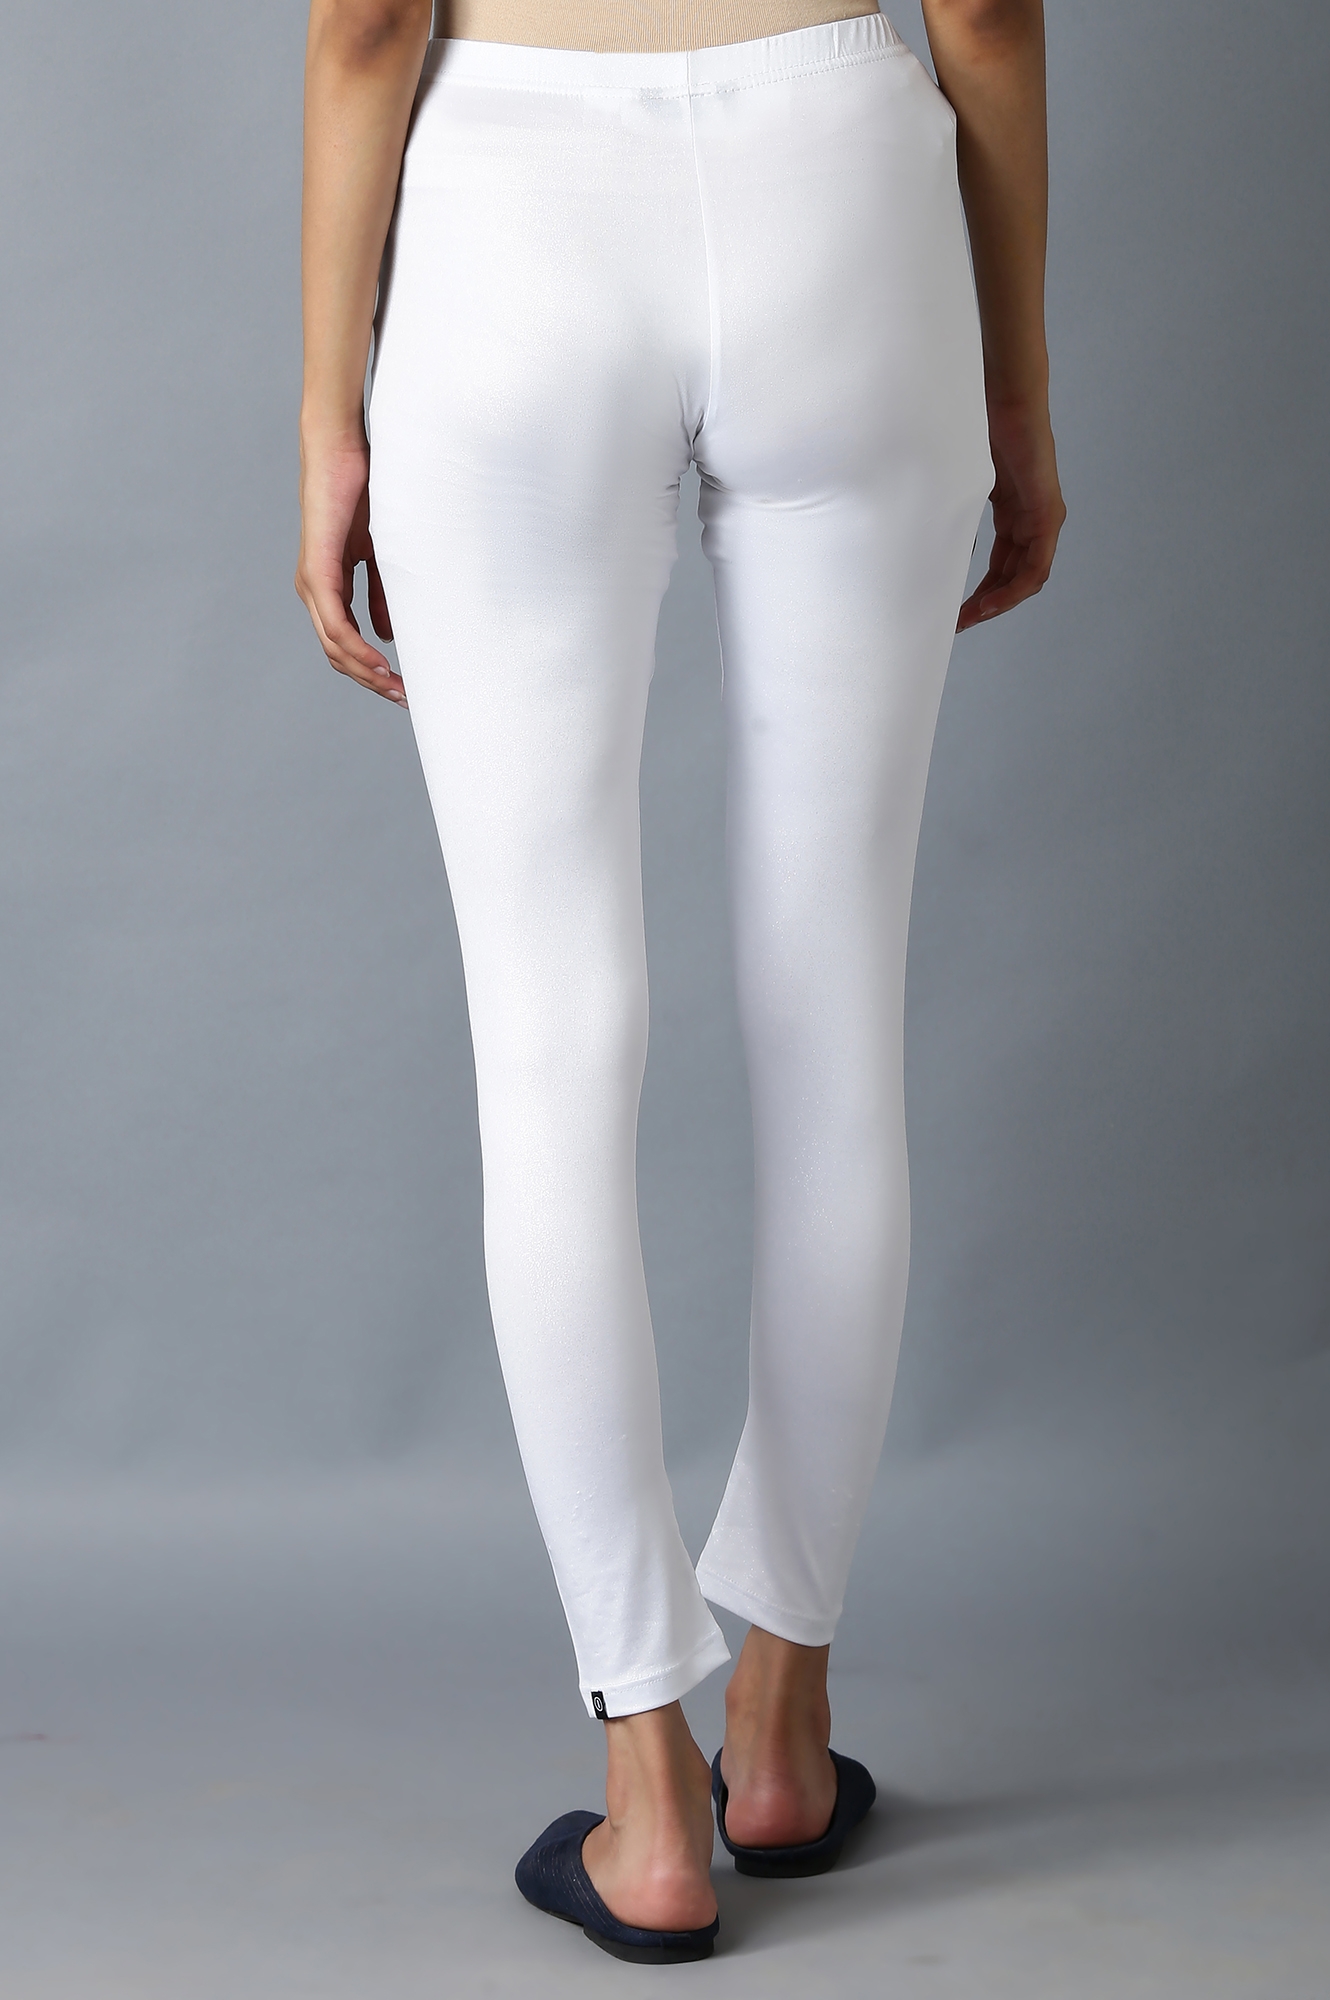 Elleven | Shimmer White Snug Fit Tights 1